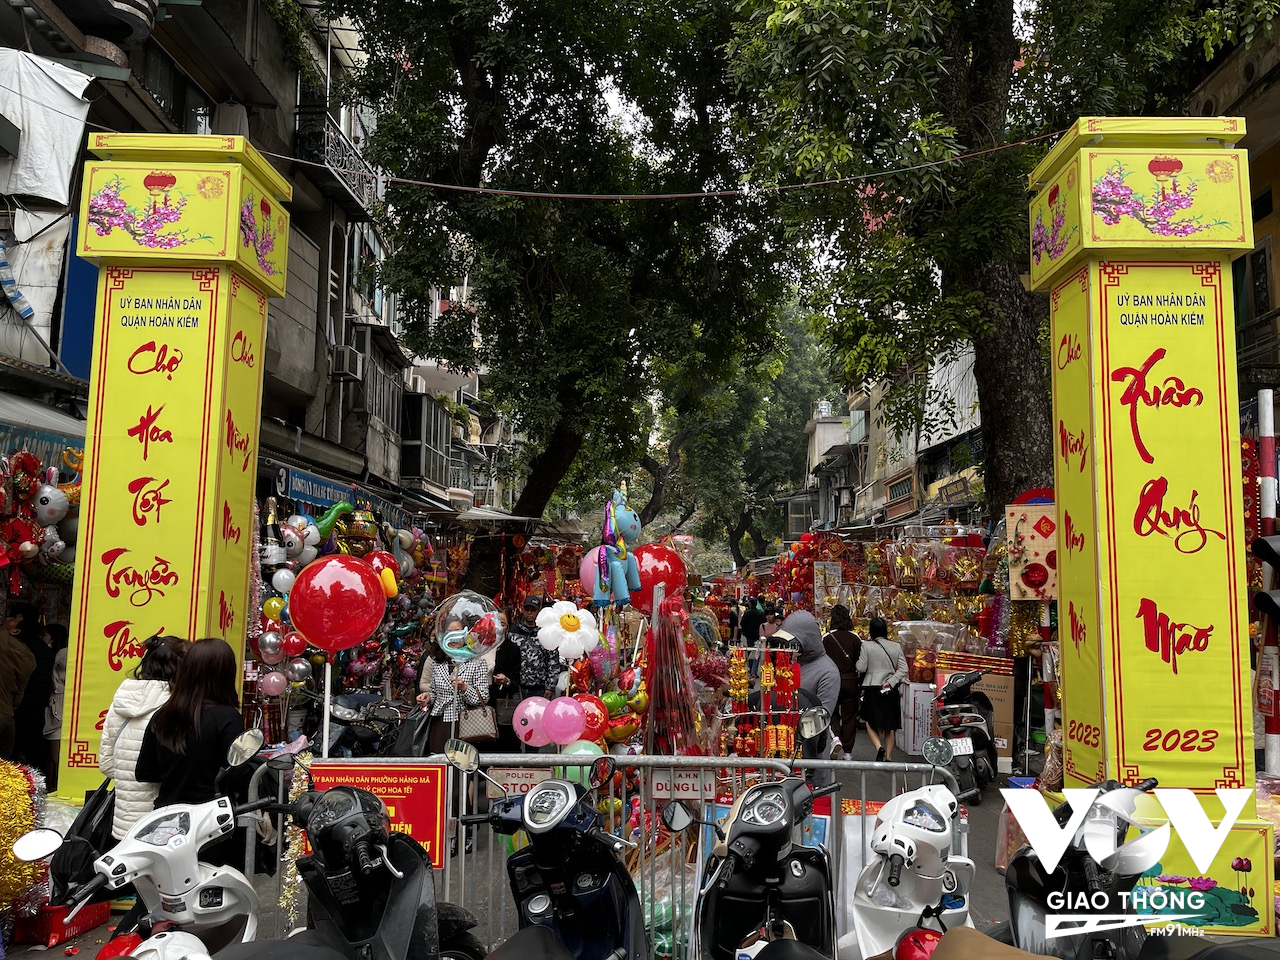 Chợ hoa truyền thống Hàng Lược có tuổi đời cả trăm năm, nằm trên phố Hàng Lược, kéo dài đến phố Hàng Mã...